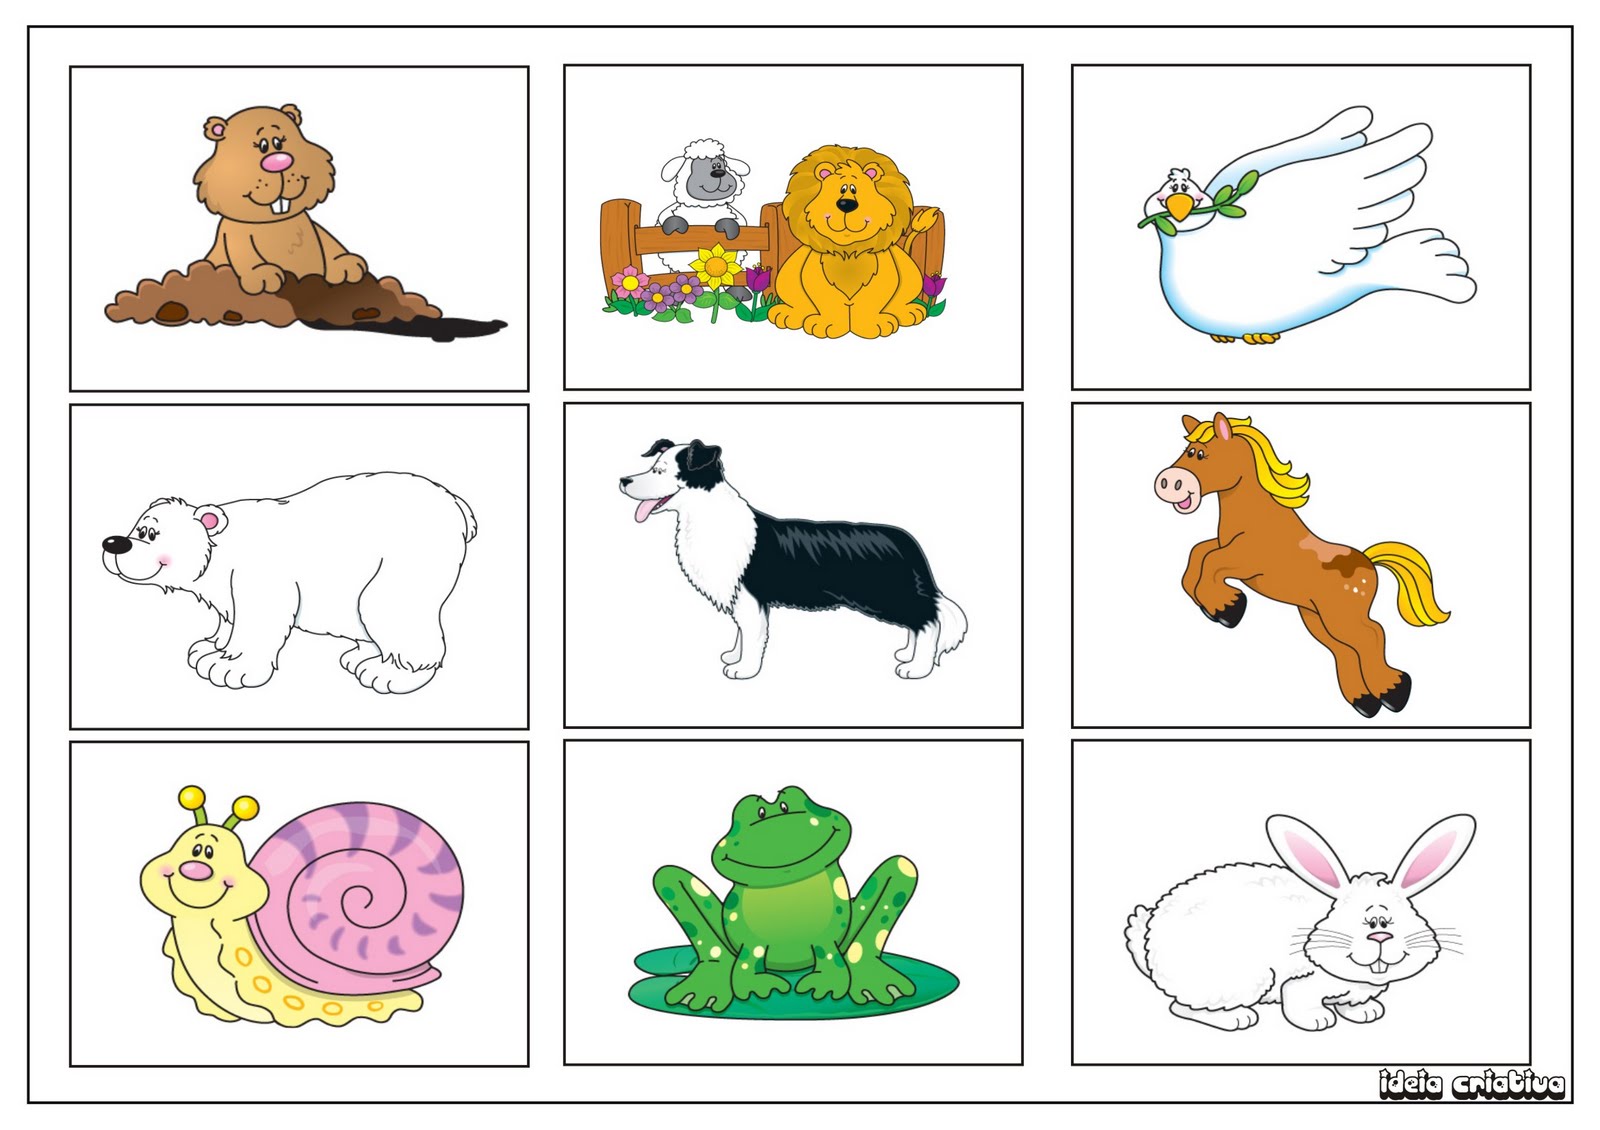 Jogo da memória animais para colorir, recortar e brincar-ESPAÇO